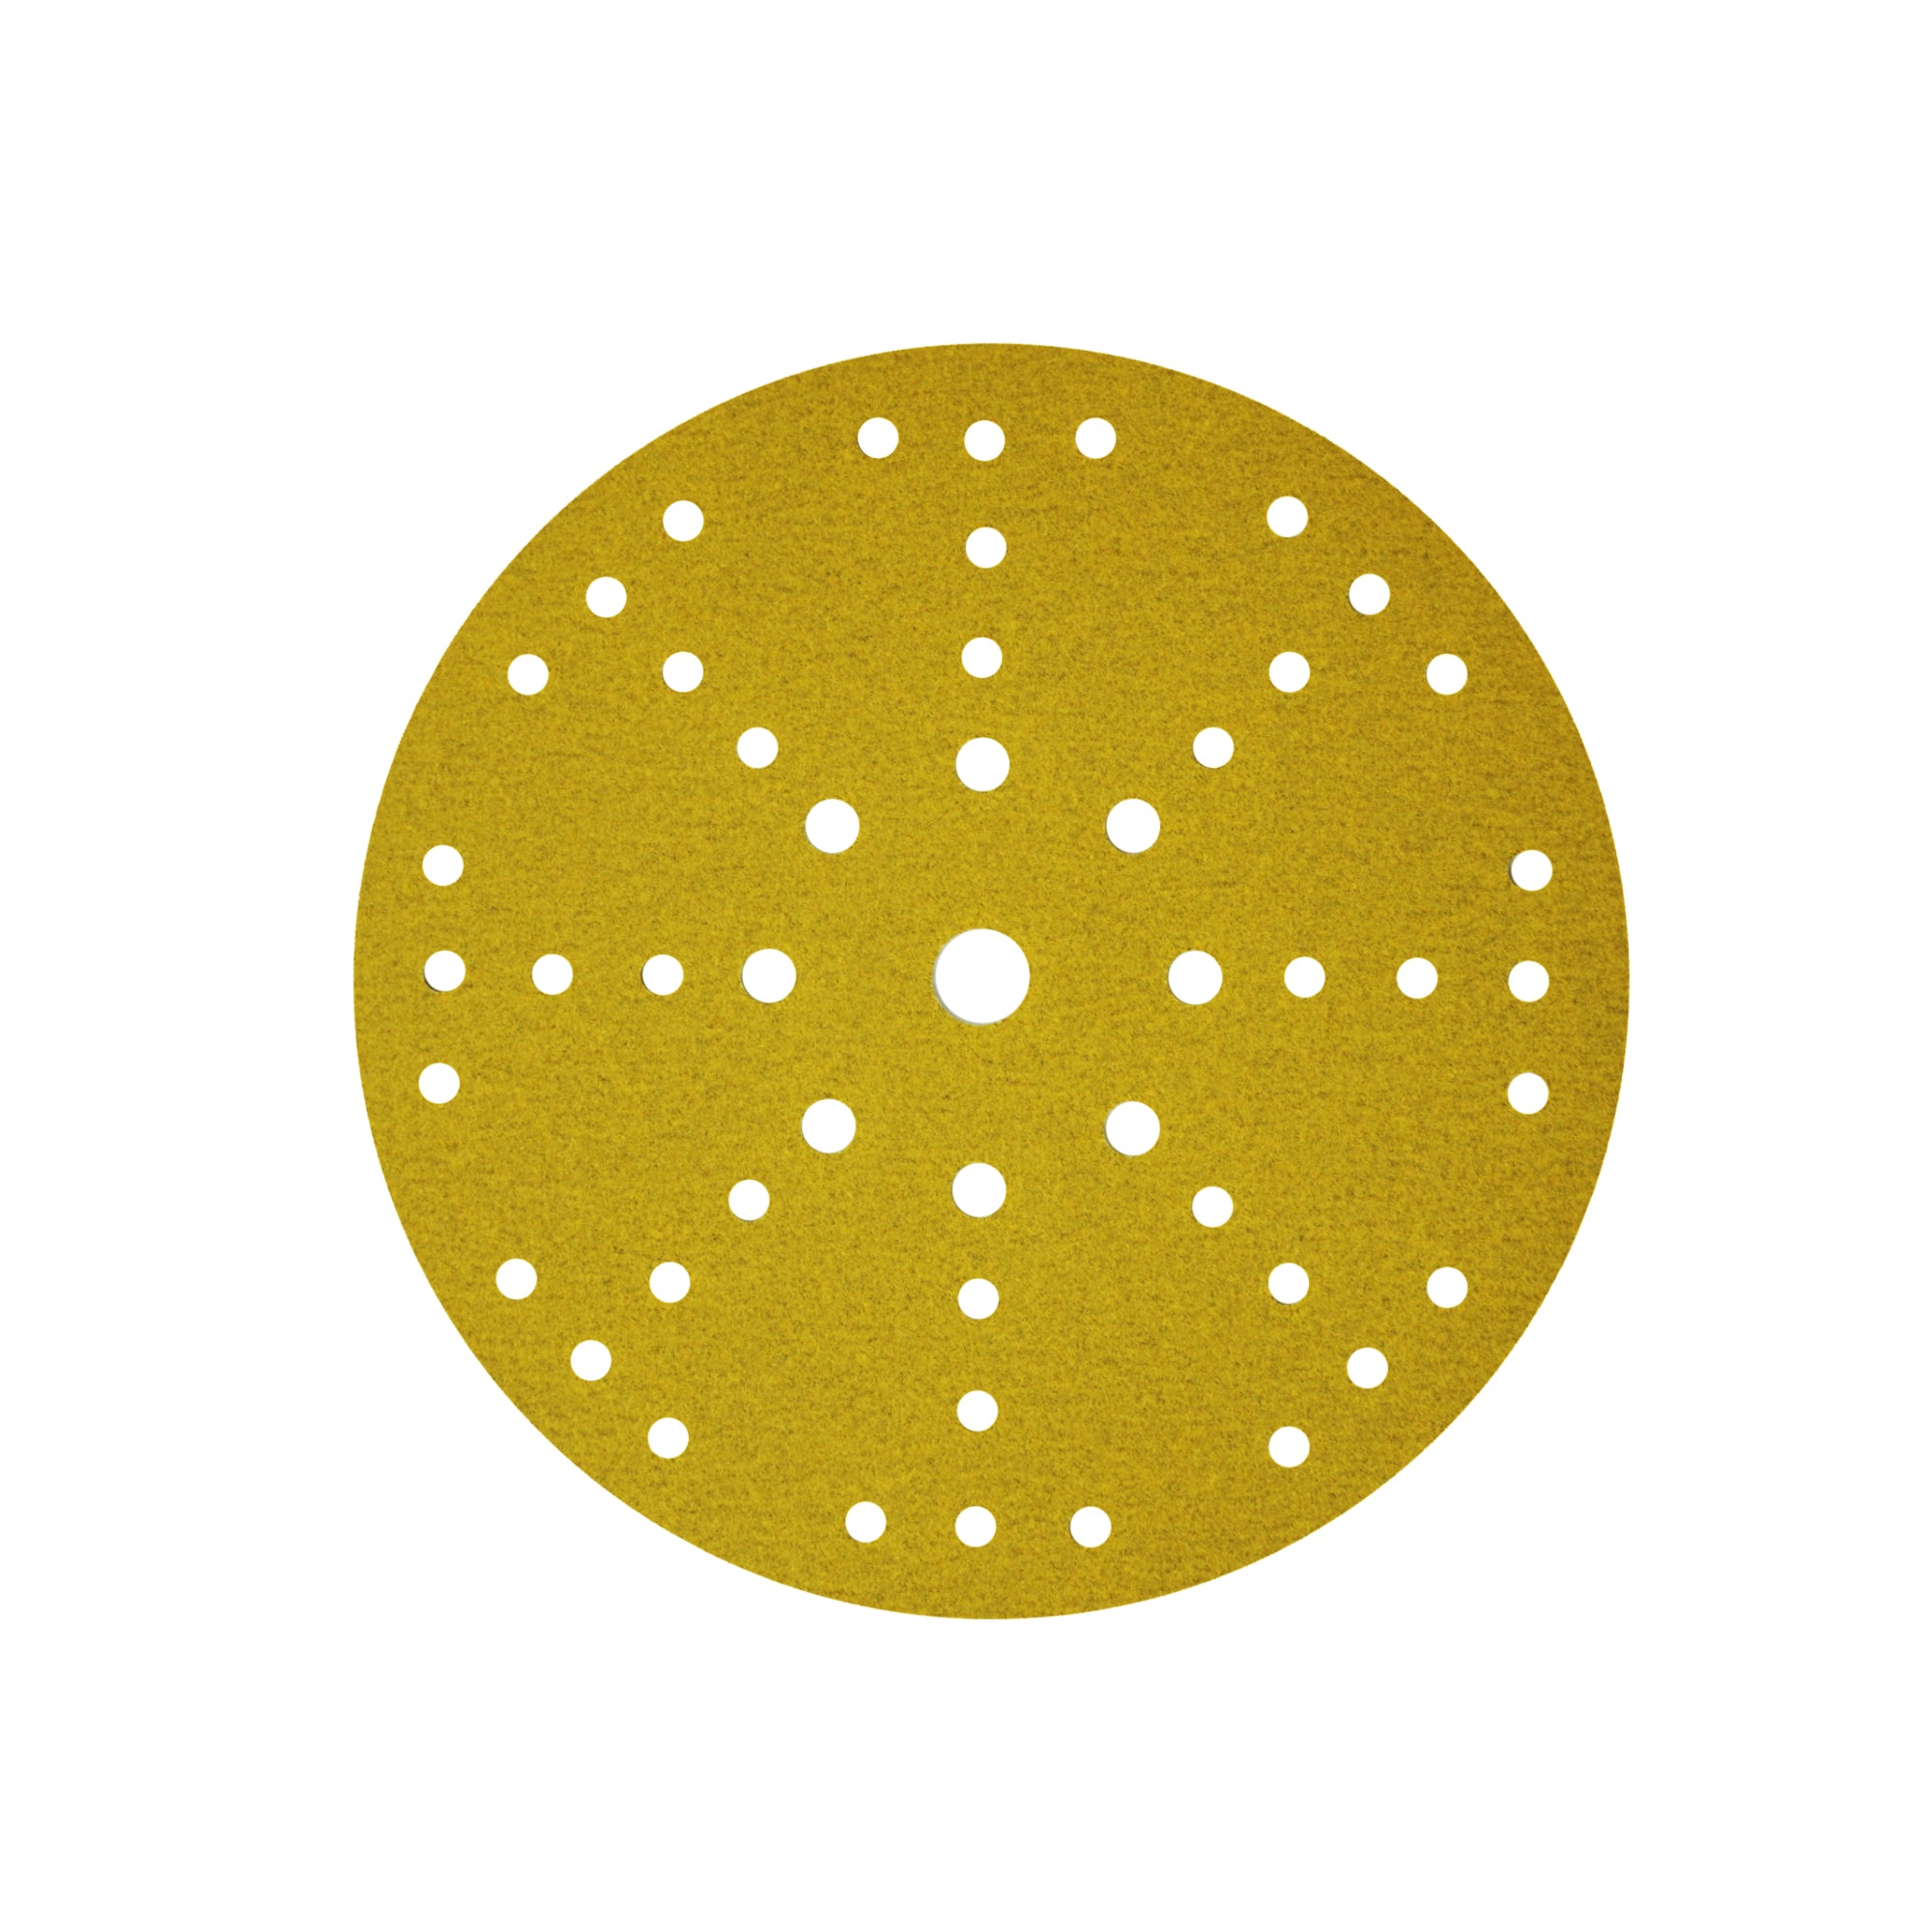 CSR - Discos de lijado redondos para paneles de yeso Prosand dorados de primera calidad para Festool (paquete de 5)